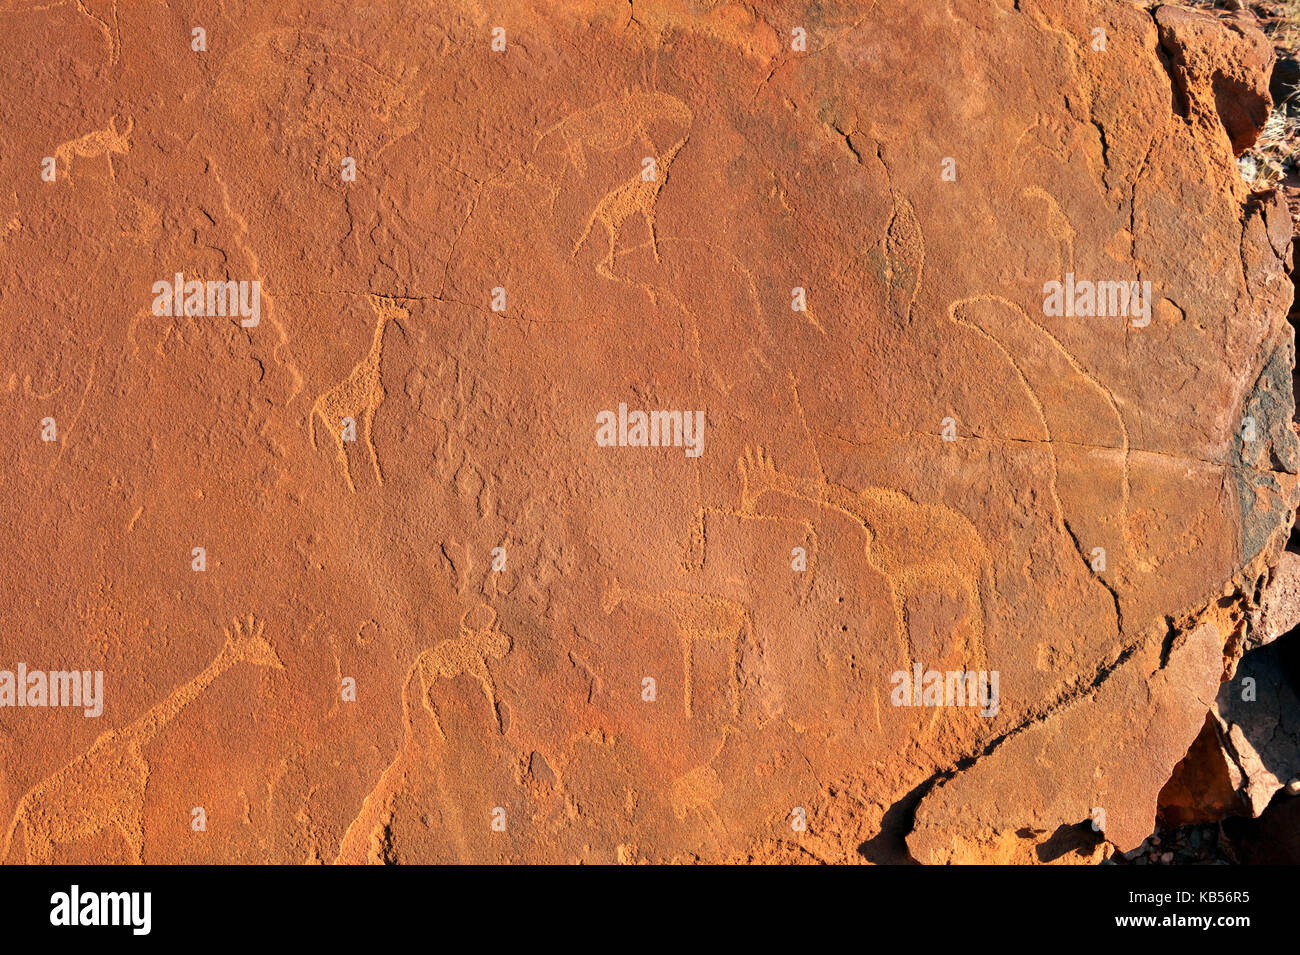 La Namibia, damaraland, twyfeltontein, classificato come patrimonio mondiale dall' UNESCO, incisioni rupestri Foto Stock